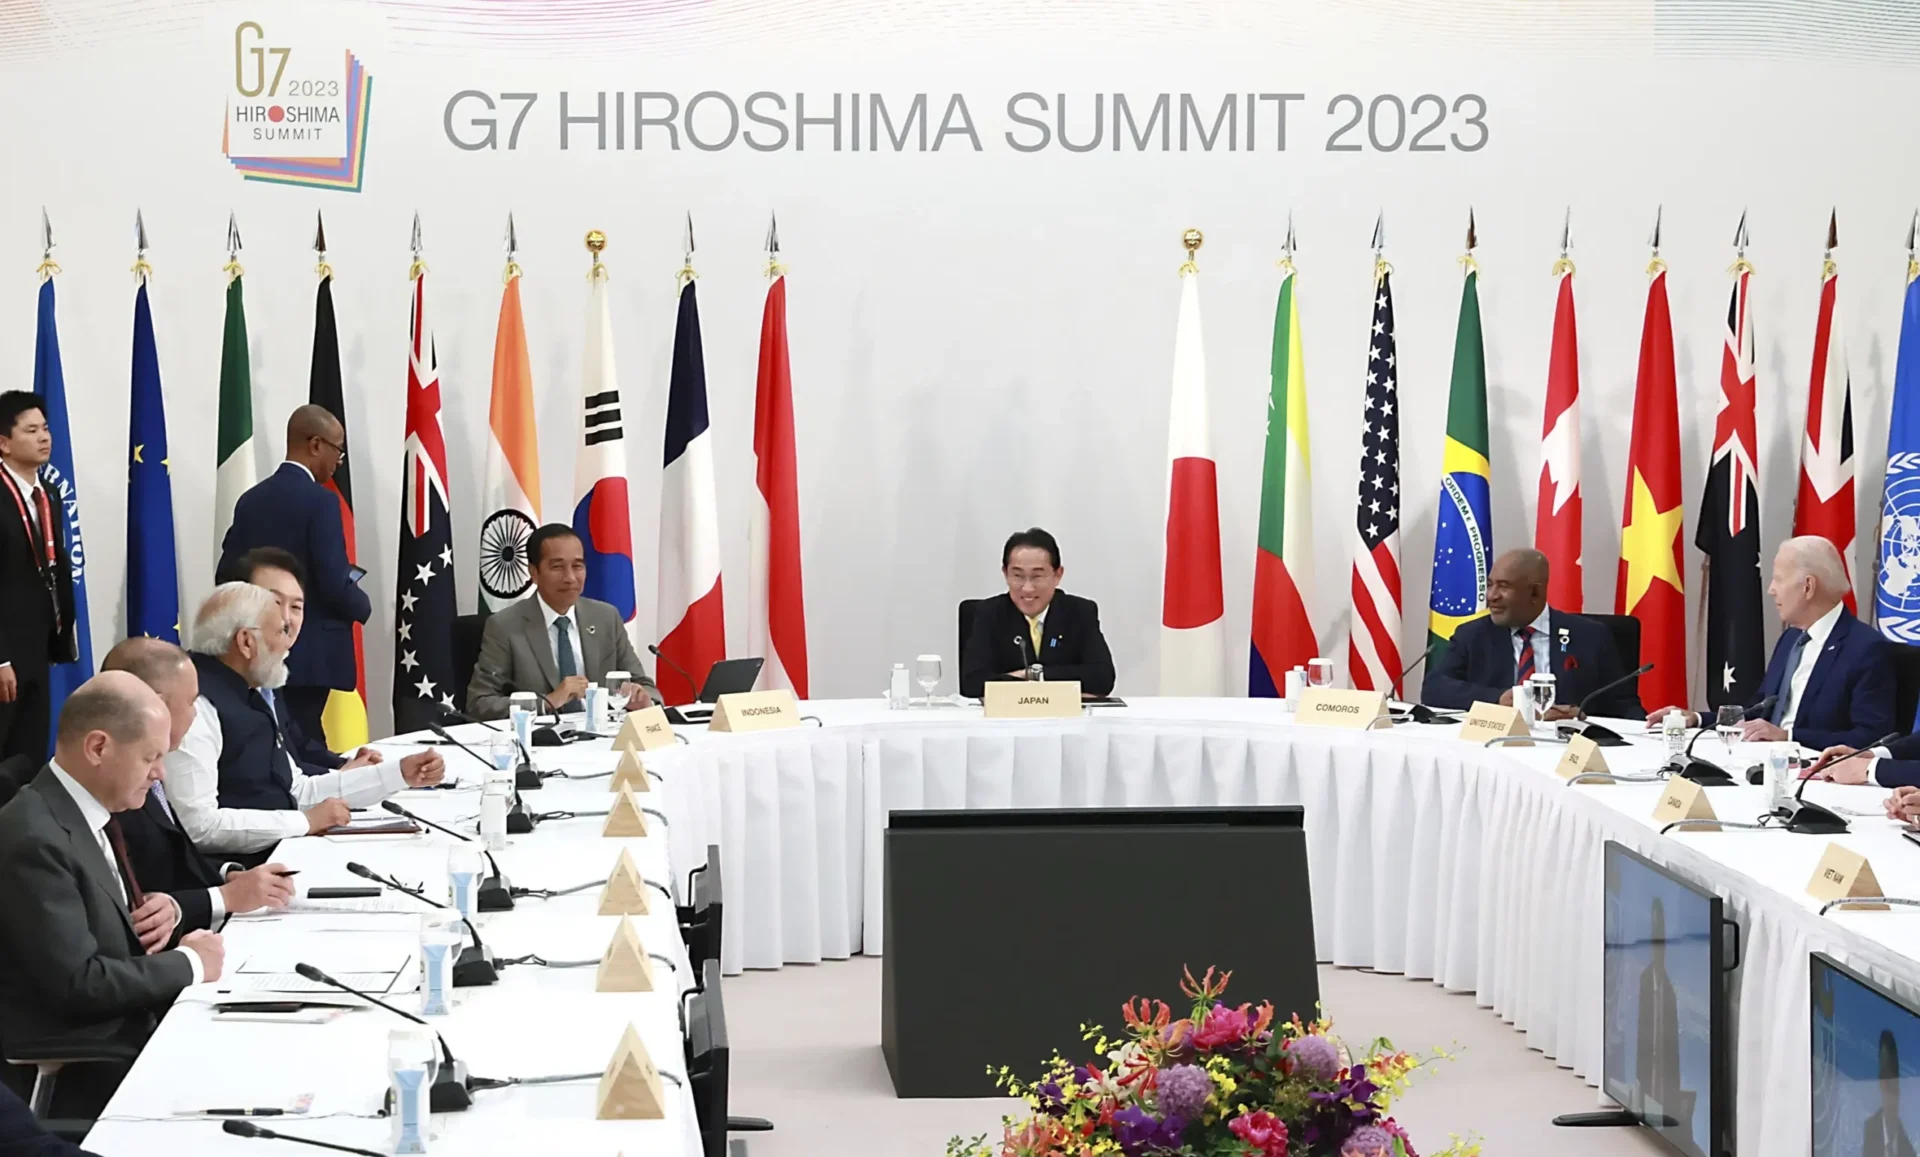 El G7 insta a China a presionar a Rusia para que ponga fin a la guerra en Ucrania, respete el estatus de Taiwán y las reglas de comercio justo